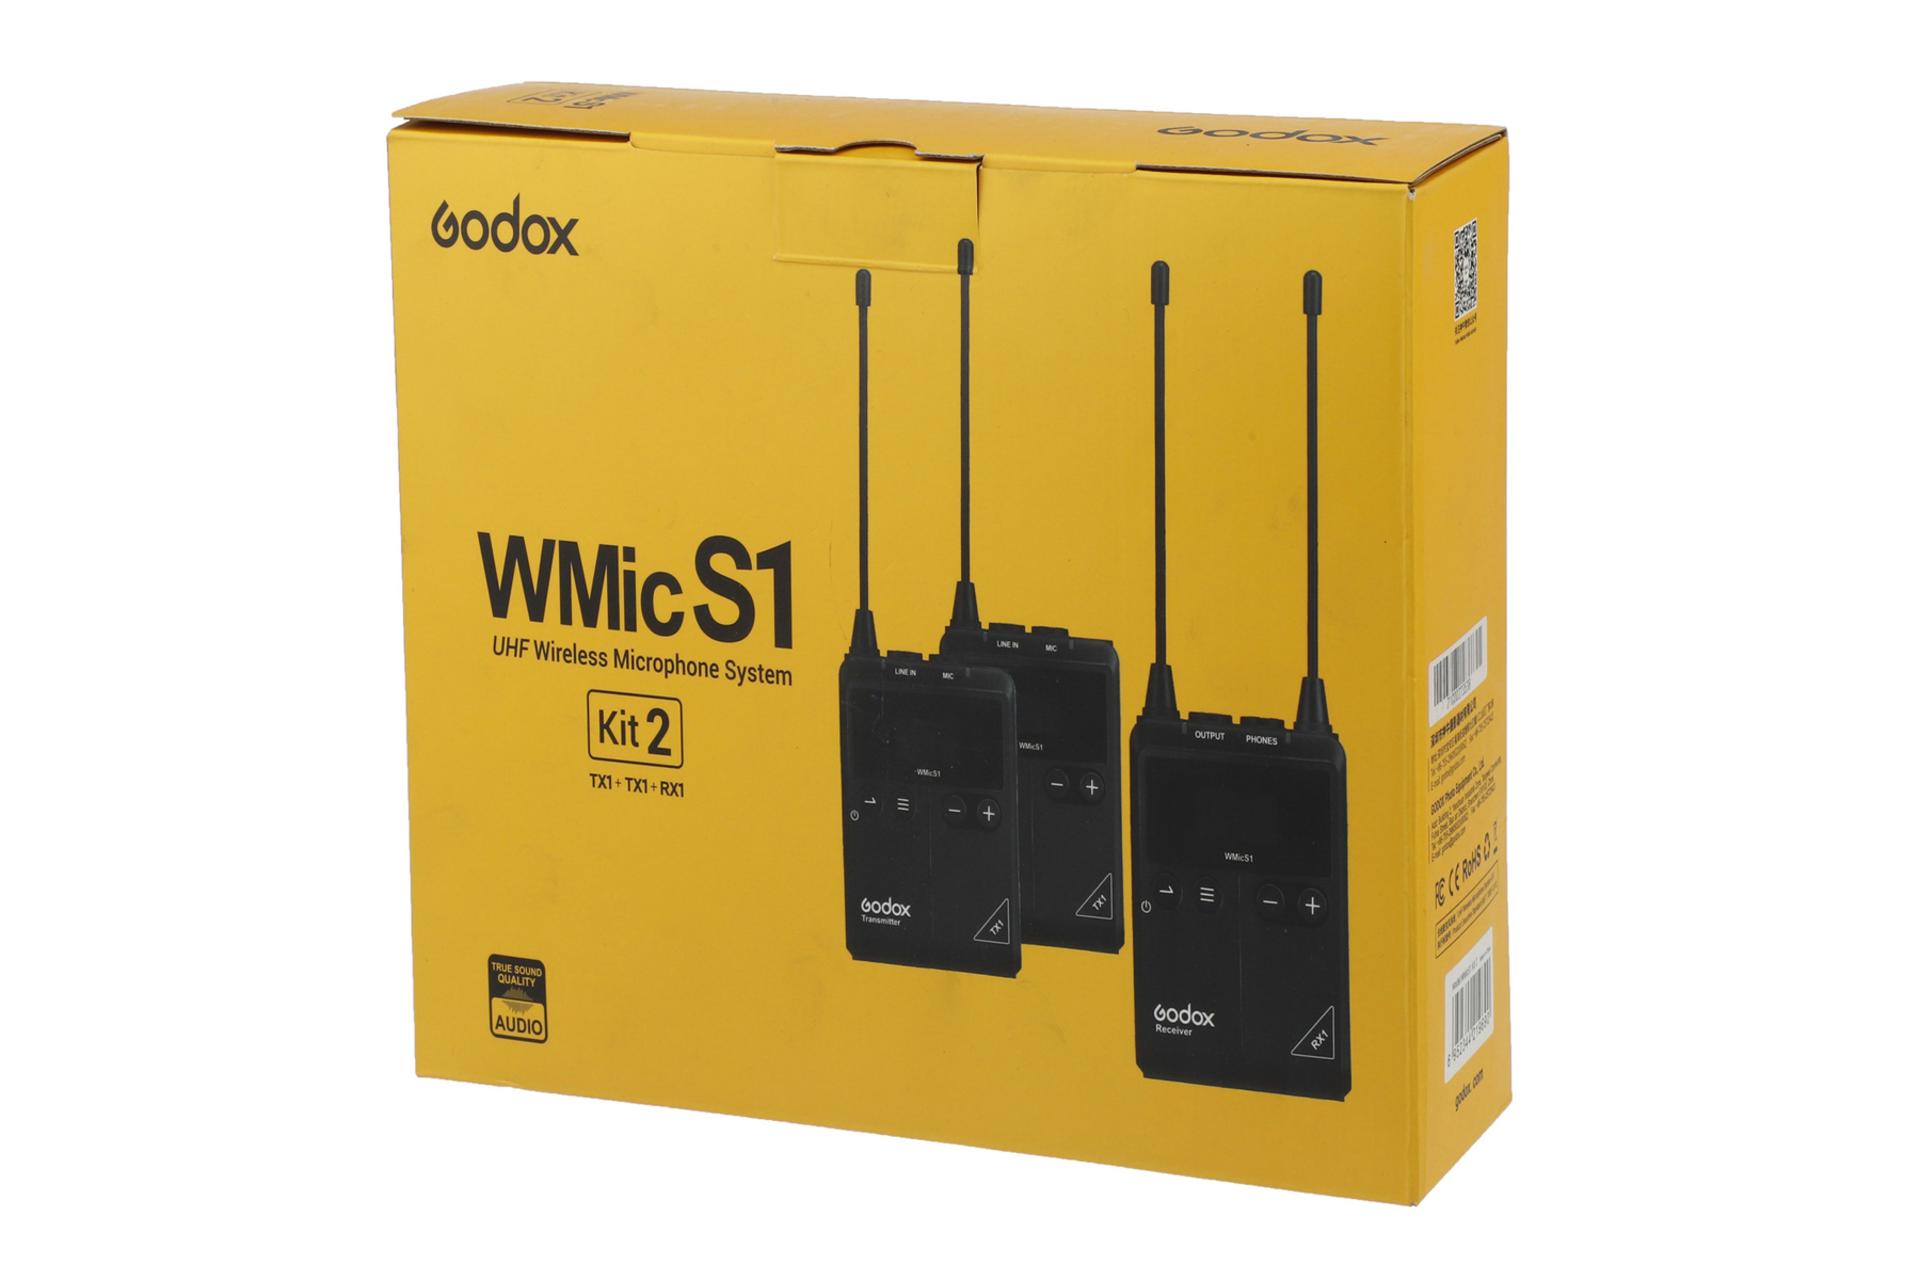 جعبه میکروفون گودوکس WMic S1 Kit 2